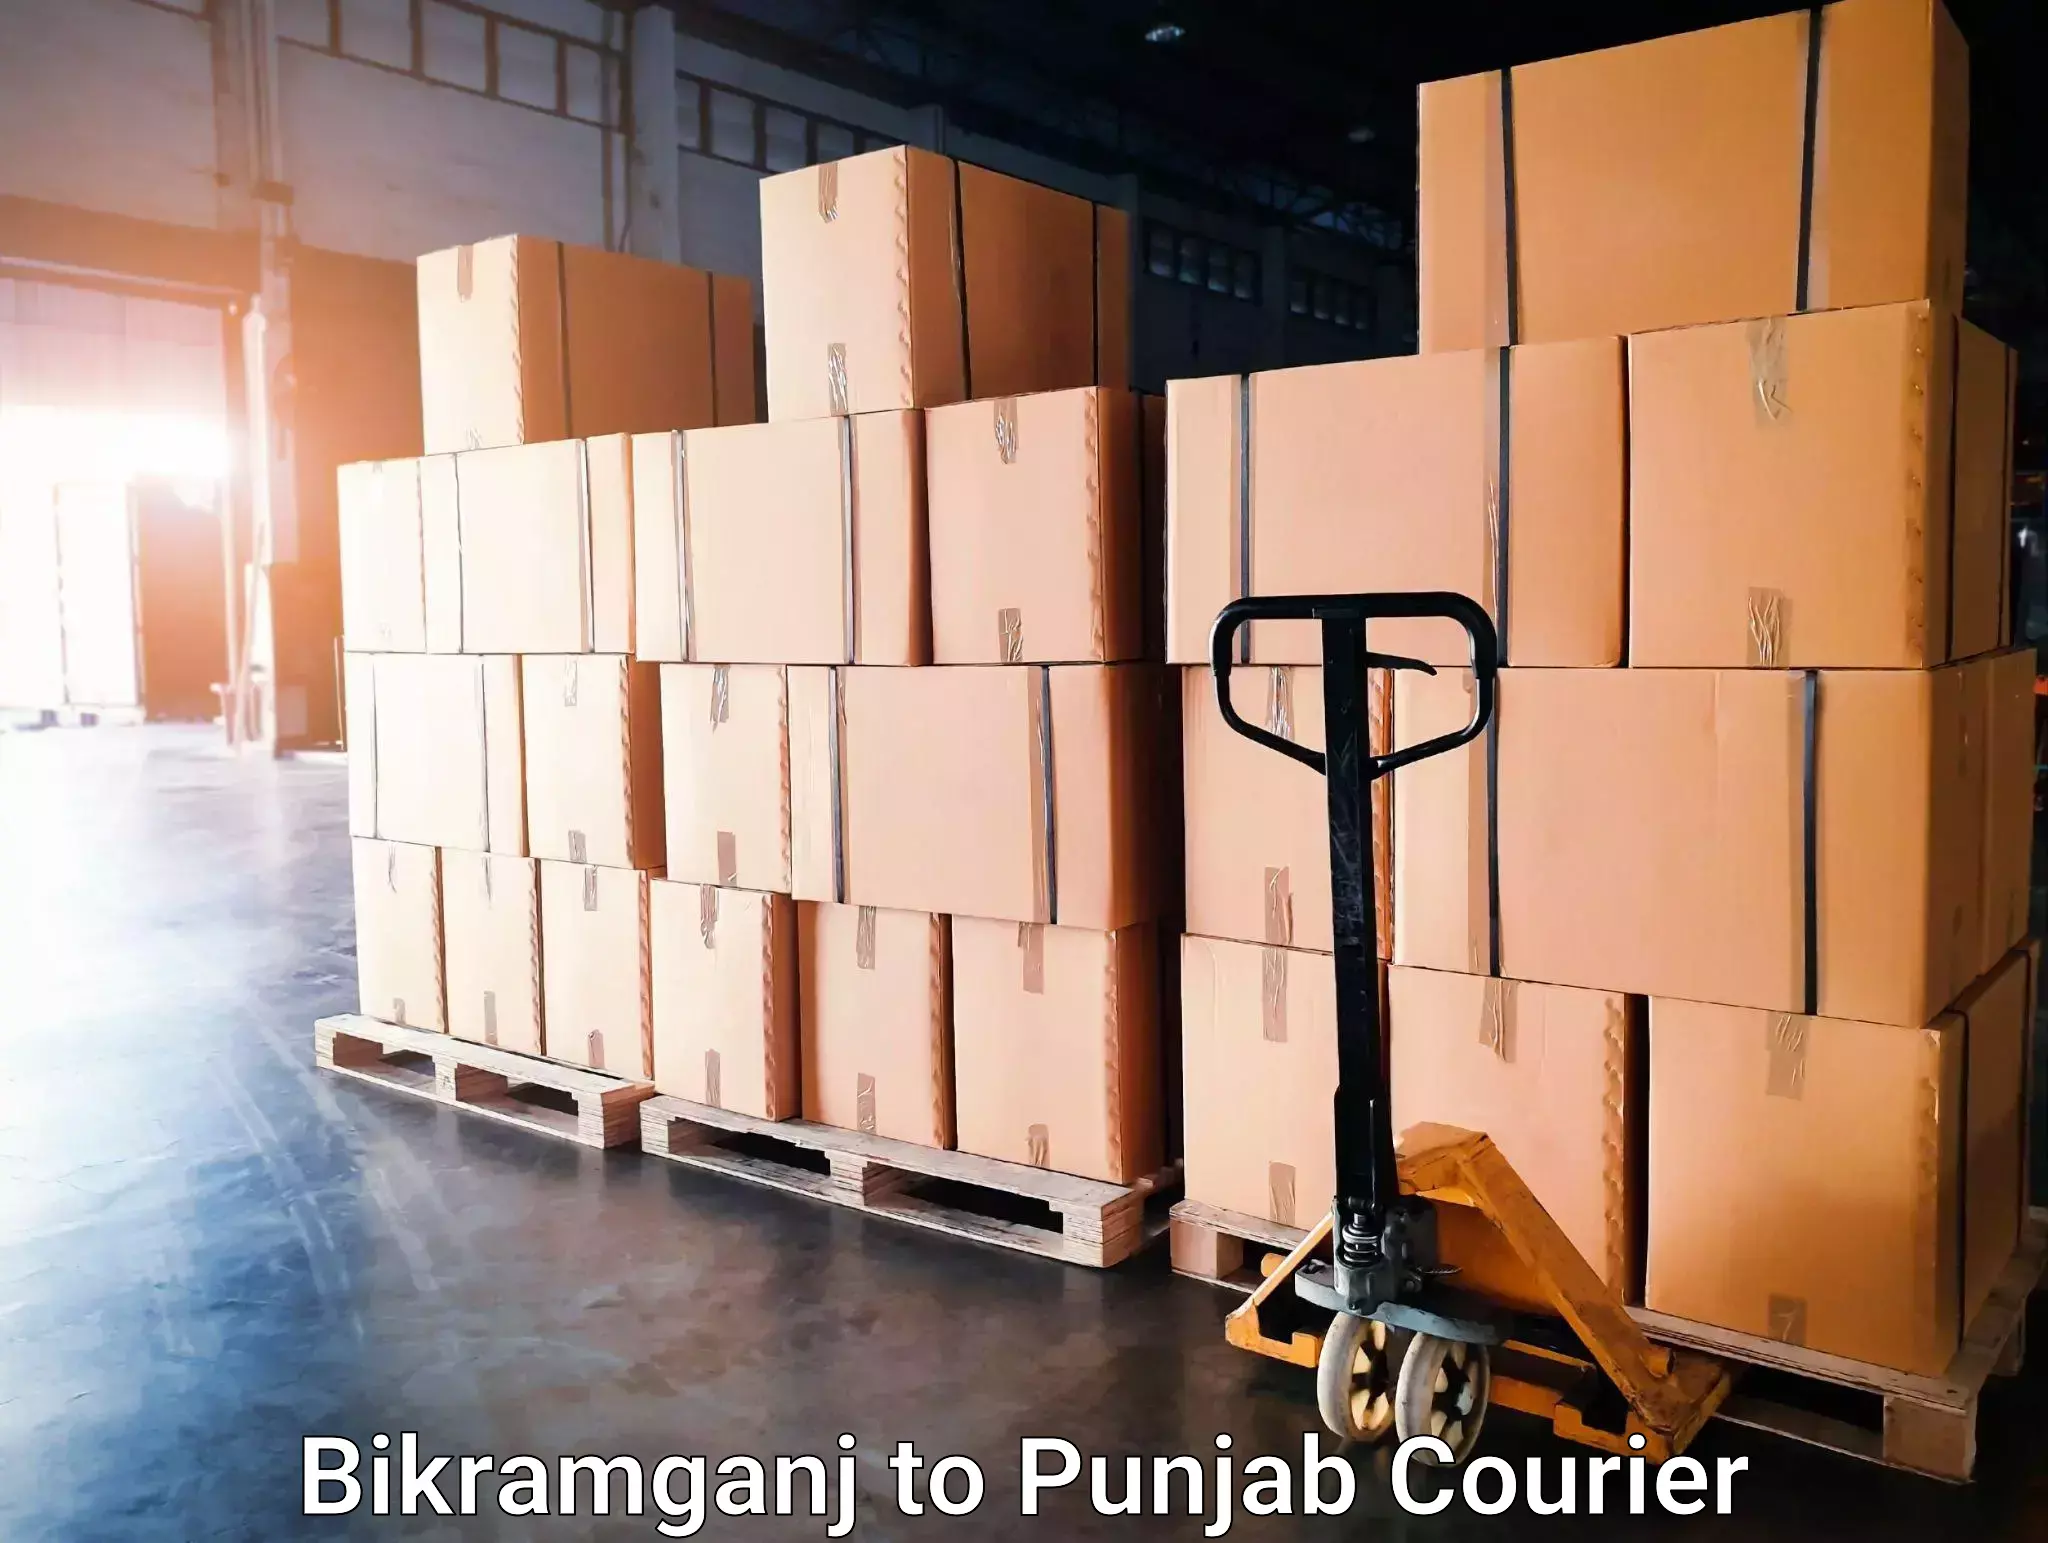 Trusted household movers Bikramganj to Zirakpur